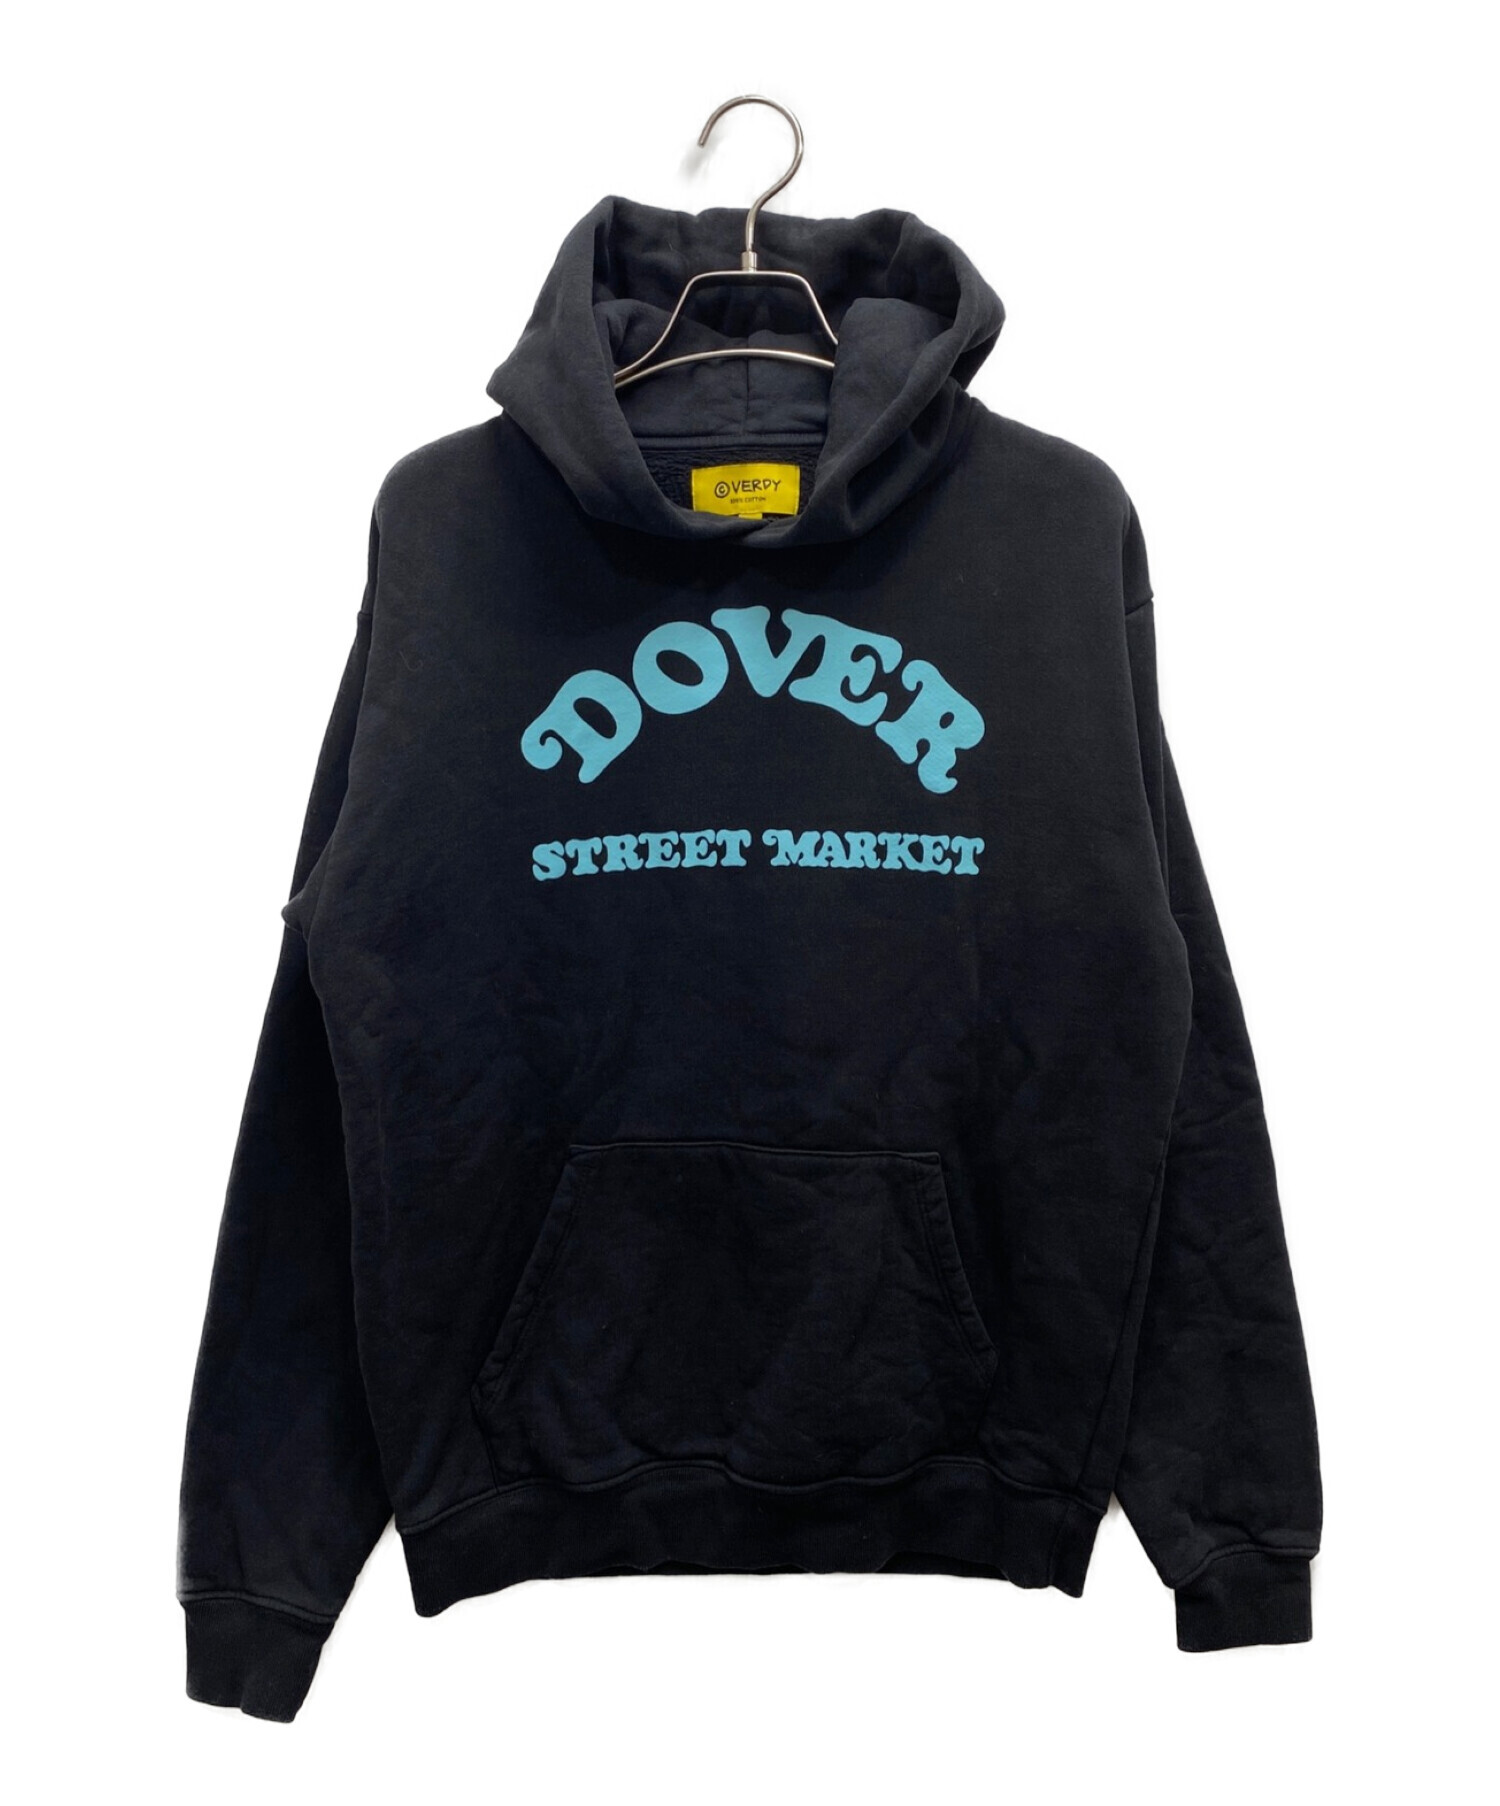 Dover Street Market VERDY HOODIE LA限定 M